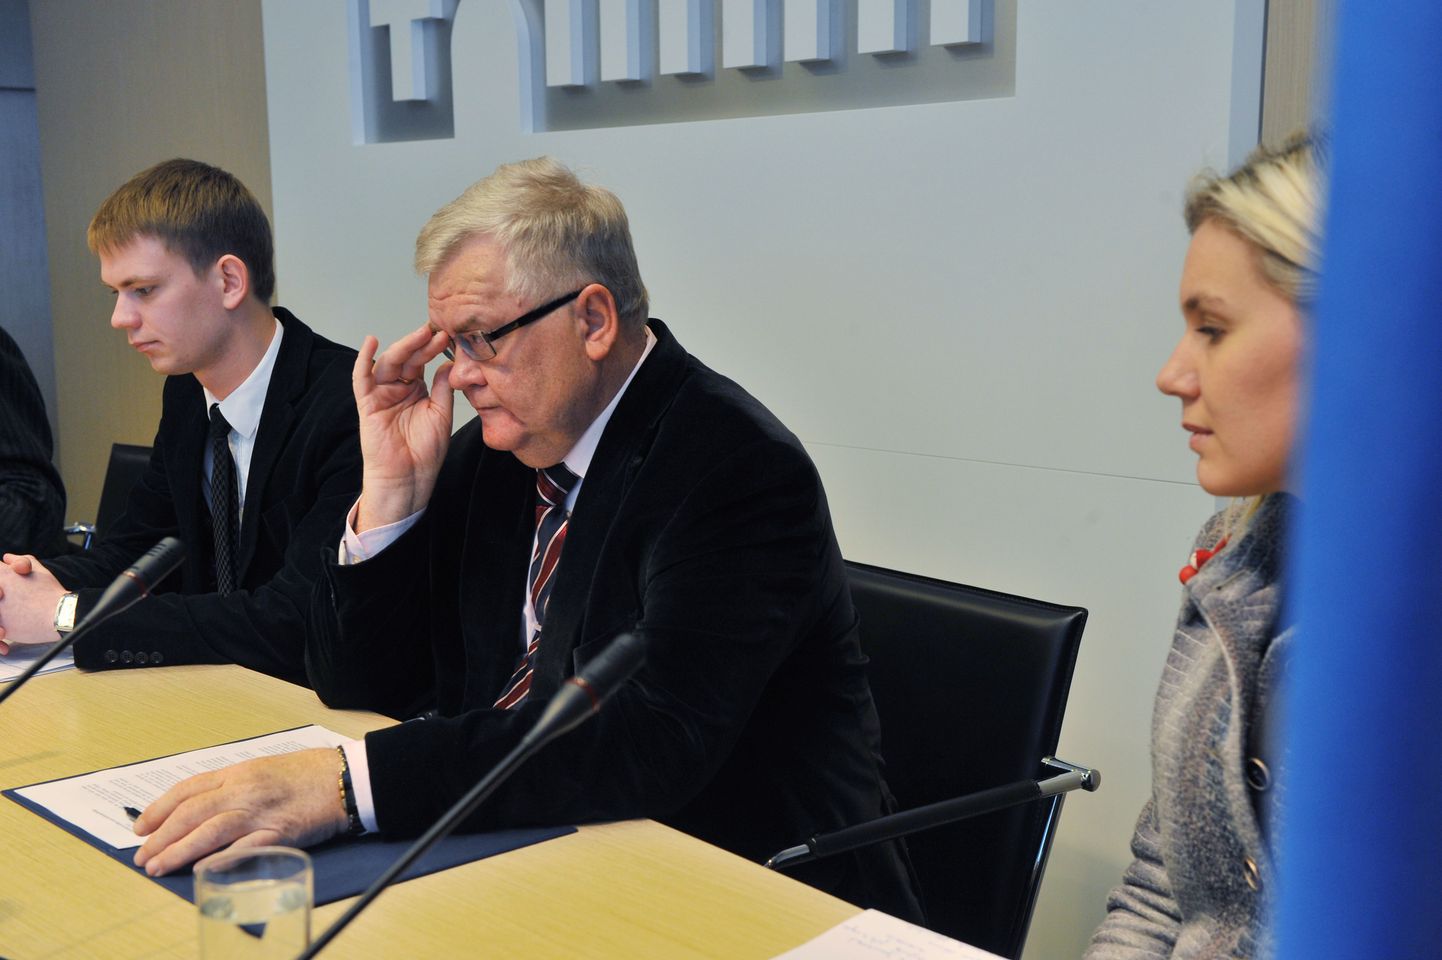 Tallinna linnapea Edgar Savisaar, Kadri Simson ja jurist Oliver Nääs (LEXTAL) Tallinna linnavalitsuse pressikeskuses.